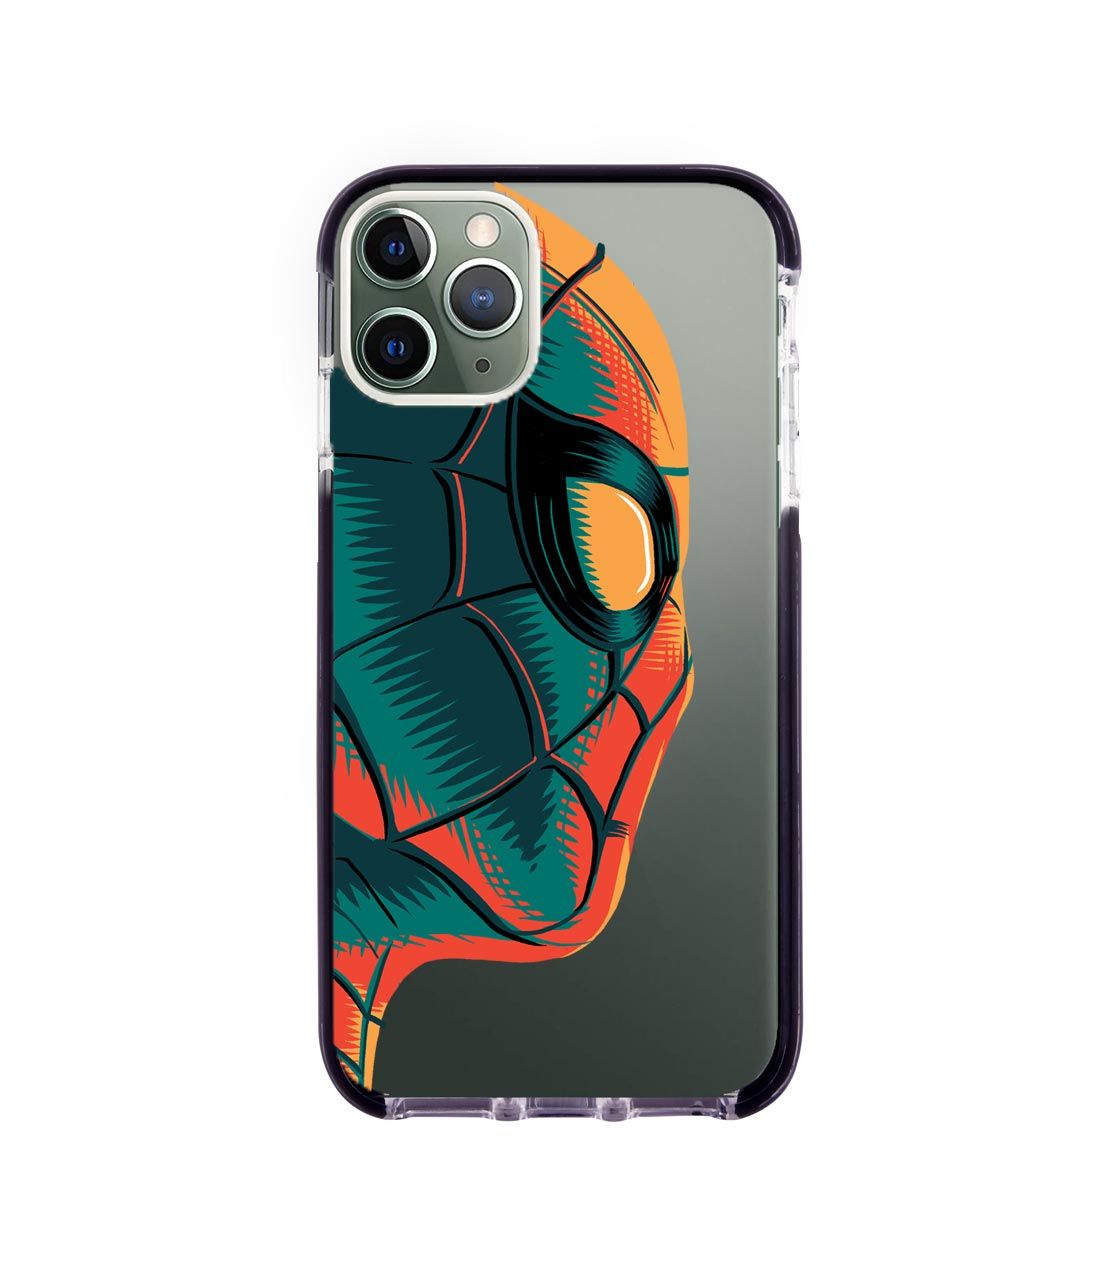 Illuminated Spiderman - Extreme Phone Case for iPhone 11 Pro